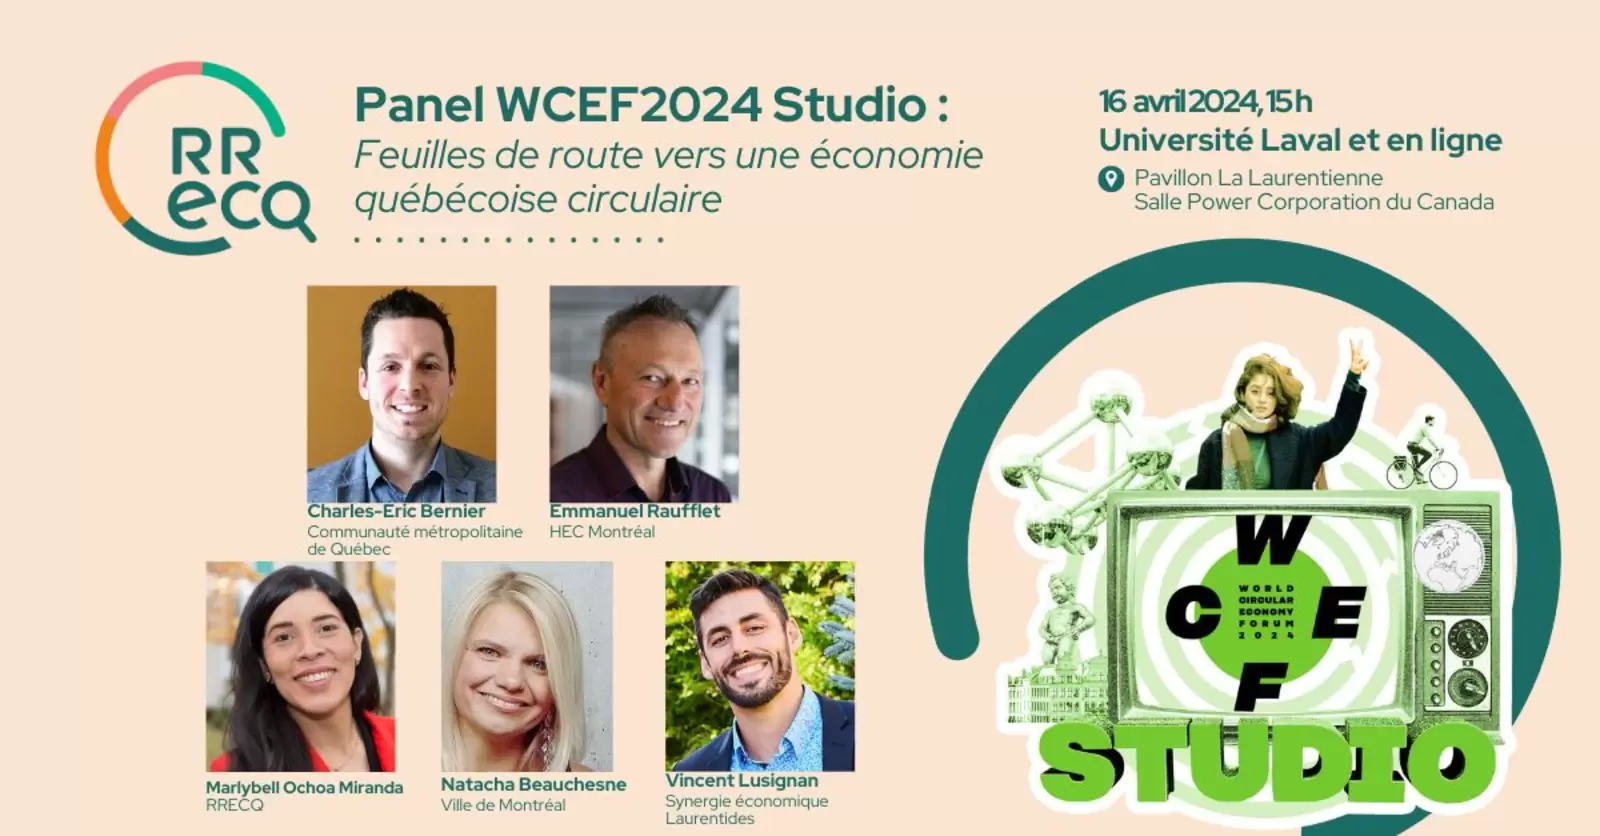 Panel WCEF2024 Studio: Feuilles de route vers une économie québécoise circulaire